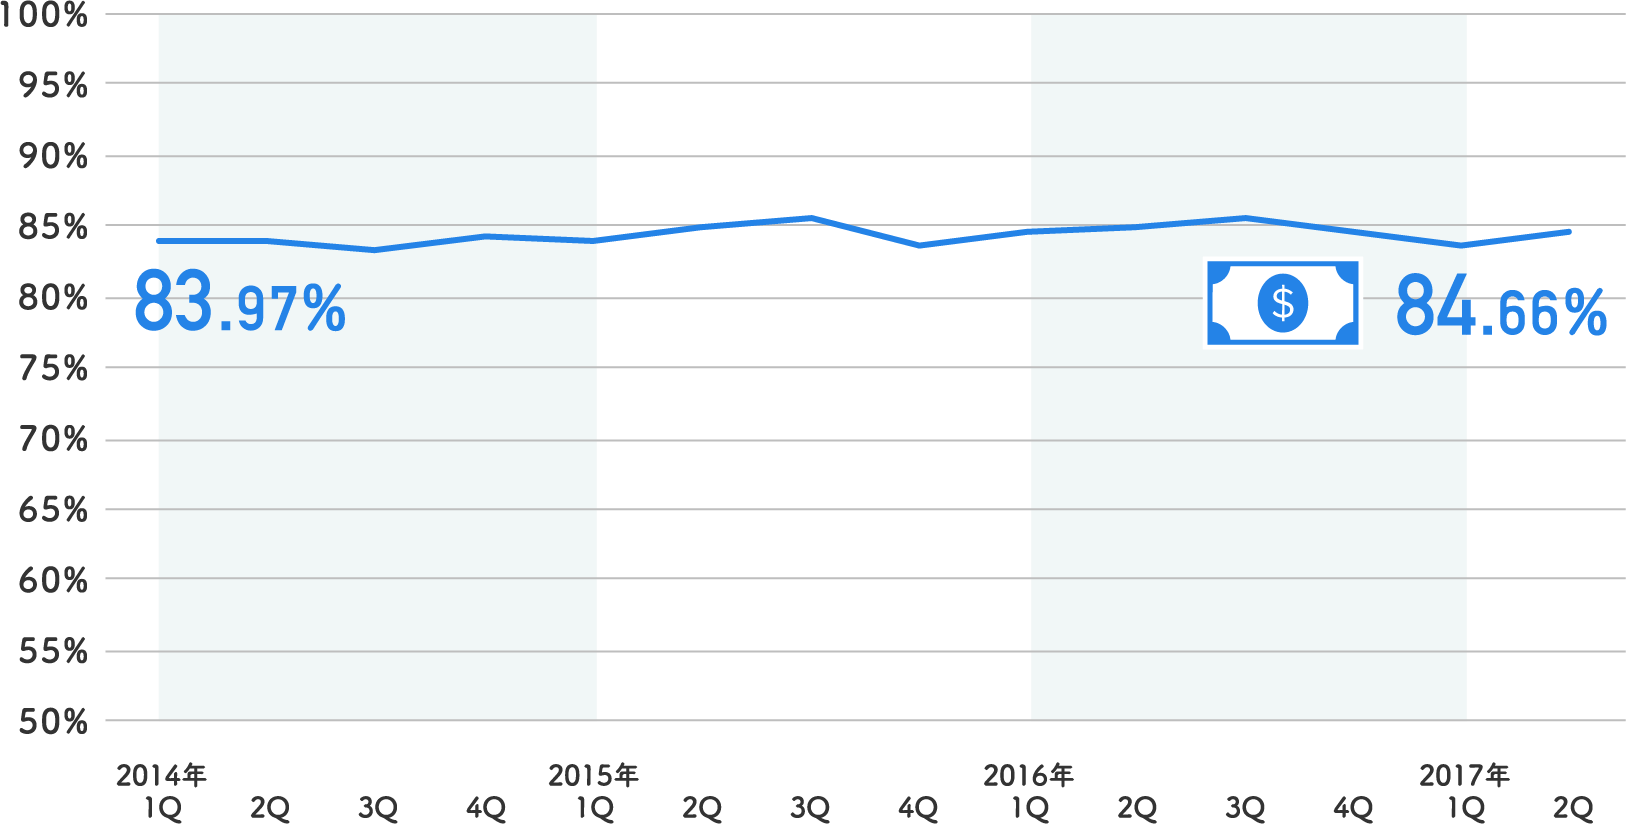 上記店舗のPCとスマートフォンの受注単価差（PCを100%とした場合）2014年83.97%から2016年84.66％